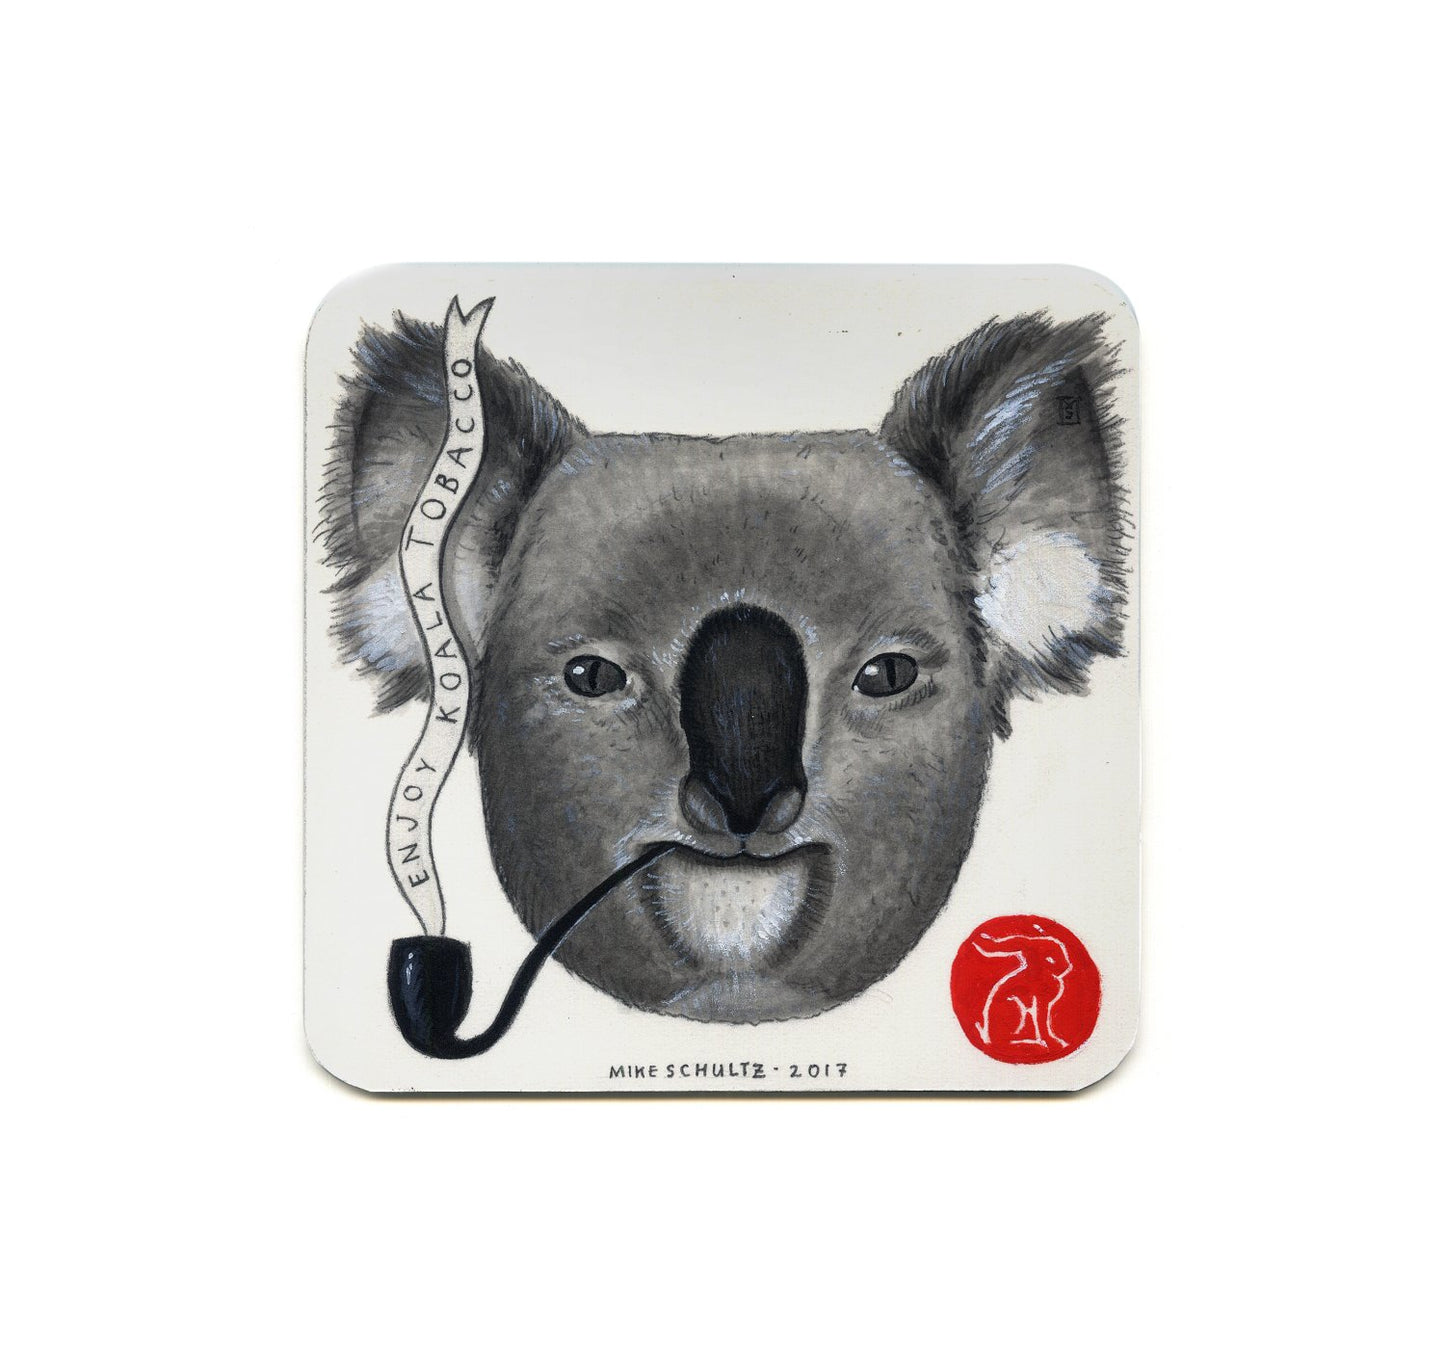 S2 Mike Schultz - Enjoy Koala Tobacco Coaster